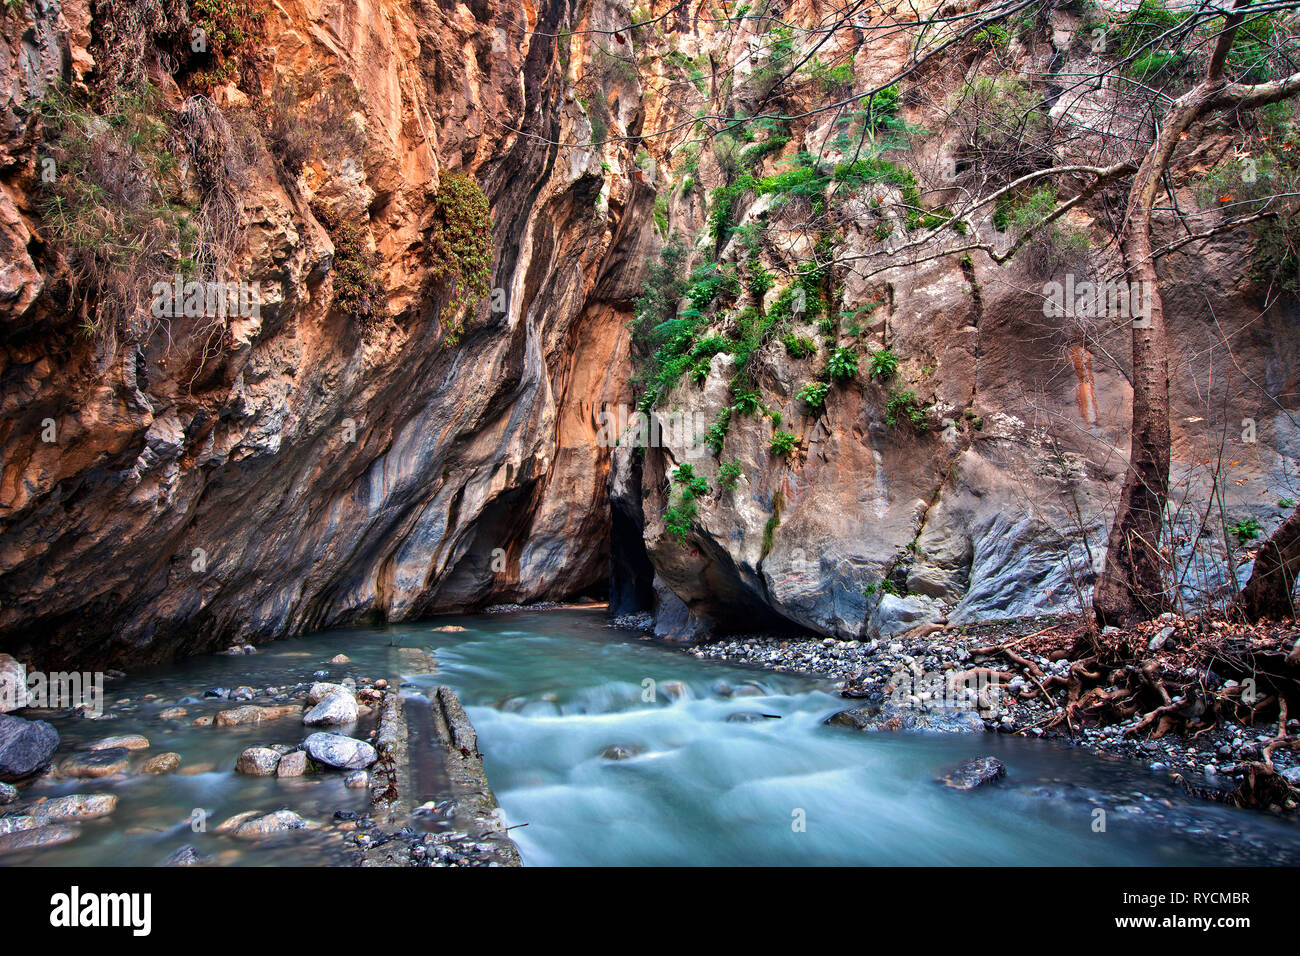 Sarakina gorge, close to Mythoi village, municipality of Ierapetra, Lasithi, Crete, Greece. Stock Photo